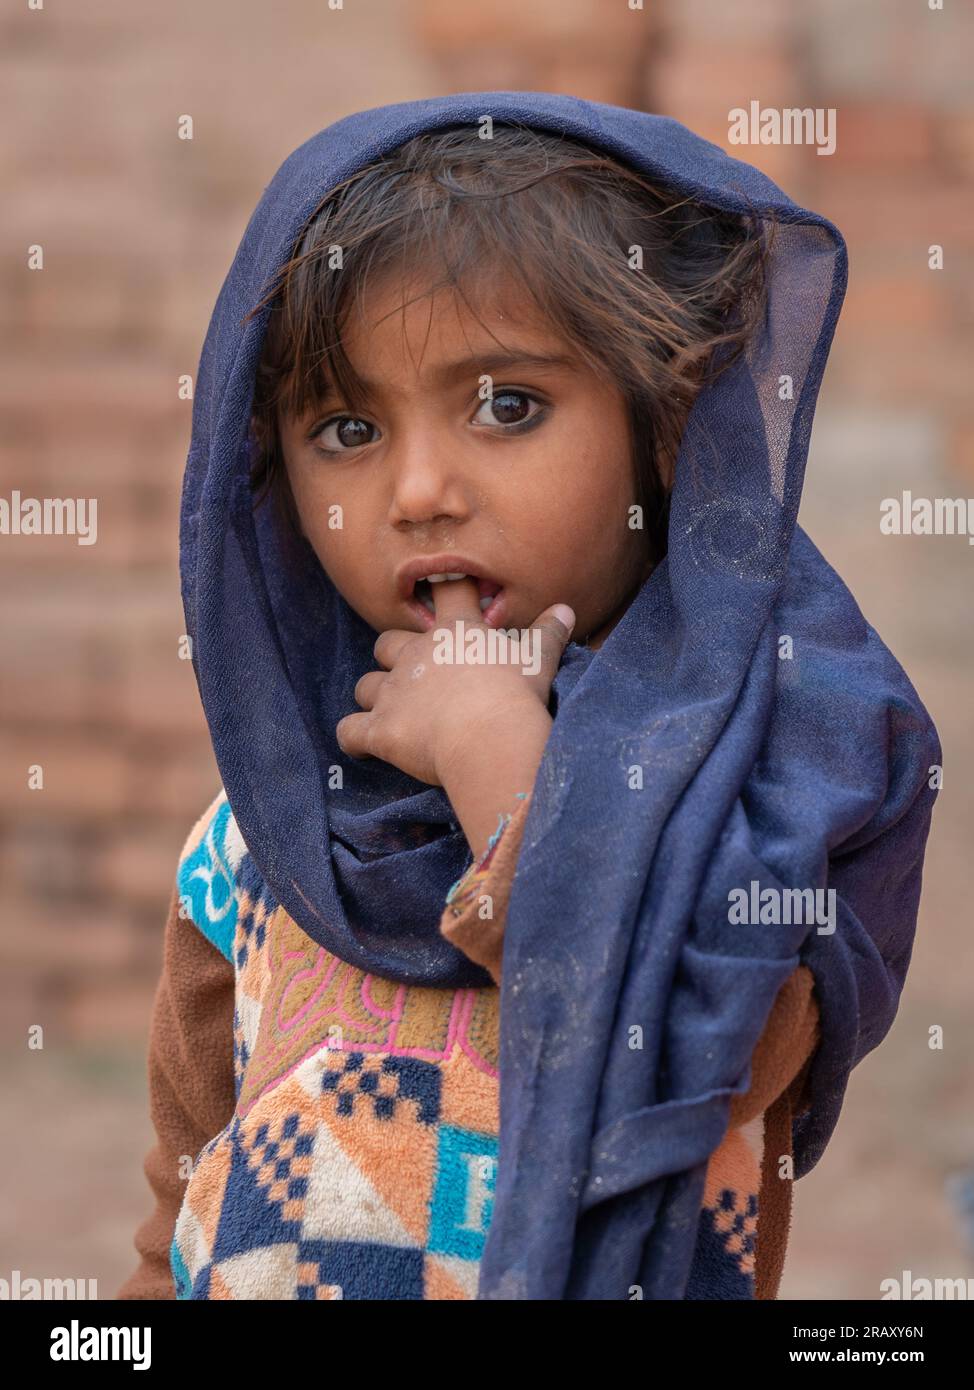 Halbkörperporträt eines schüchternen kleinen Mädchens mit indigo-blauem Schleier auf natürlichem Hintergrund Stockfoto